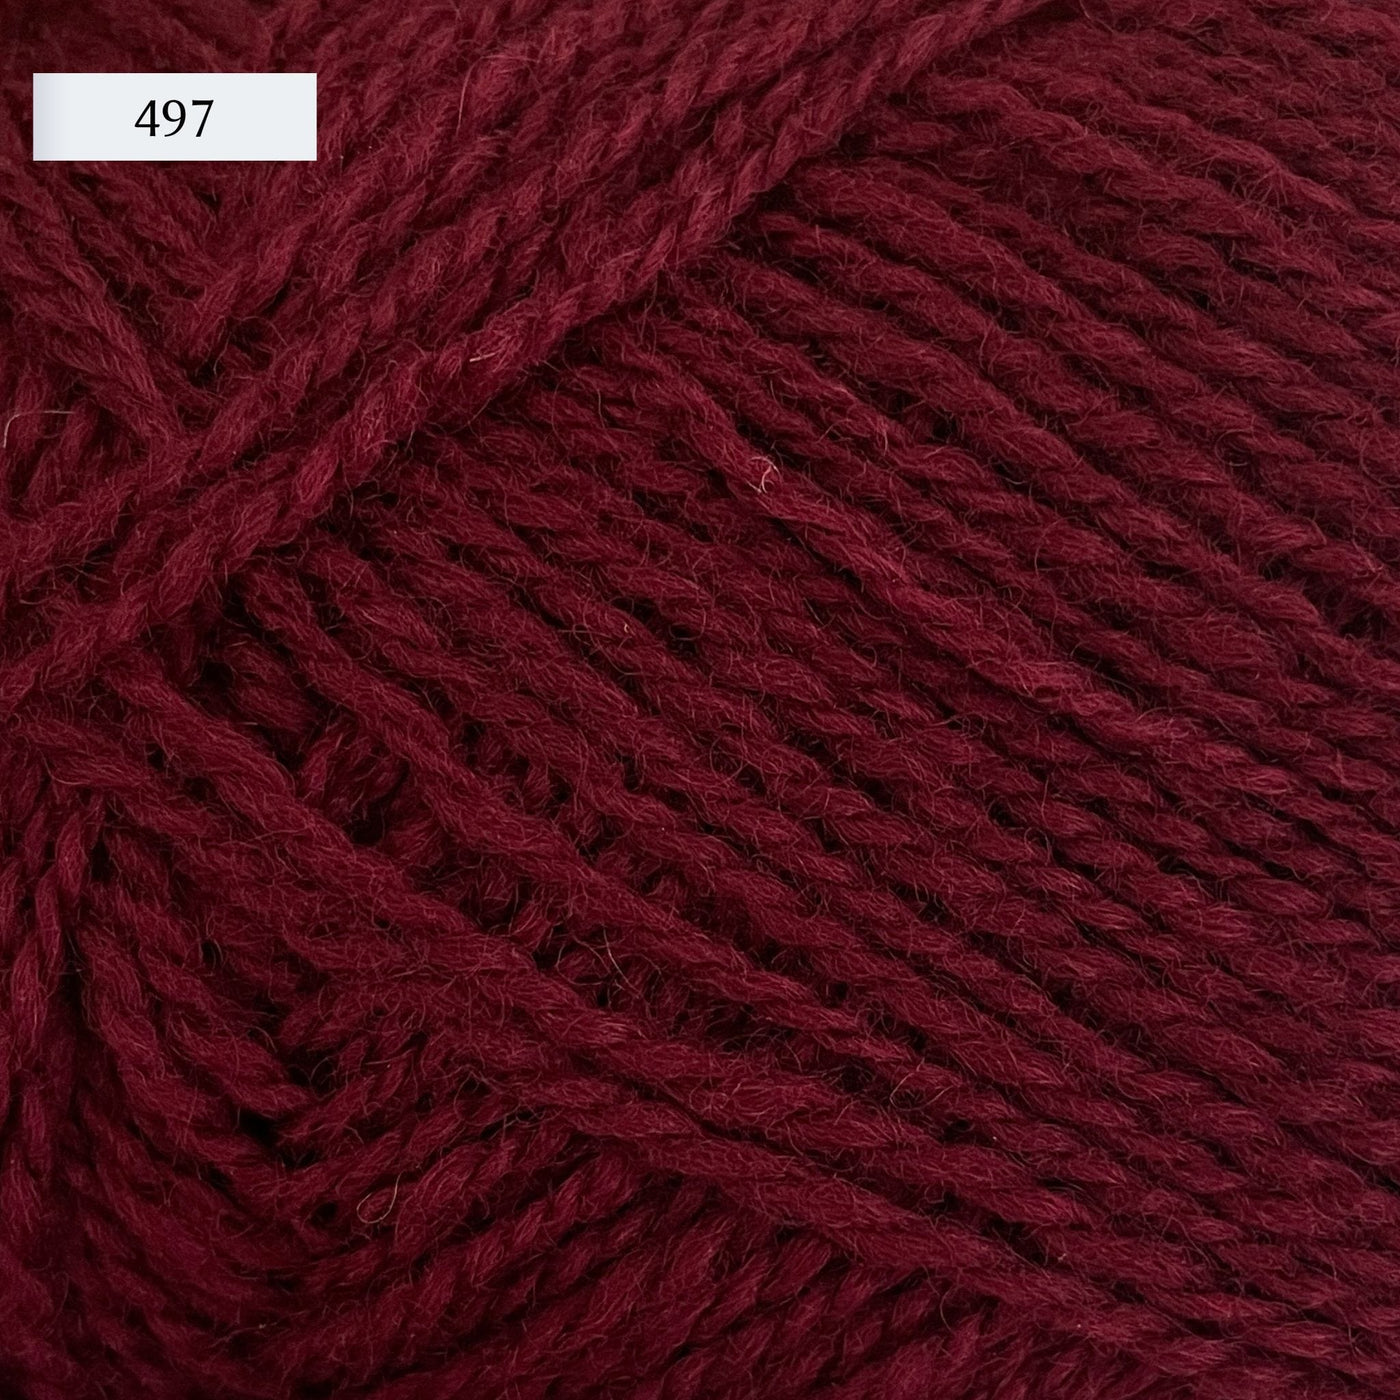 Rauma Finullgarn, a fingering/sport weight yarn, in color 497, a maroon